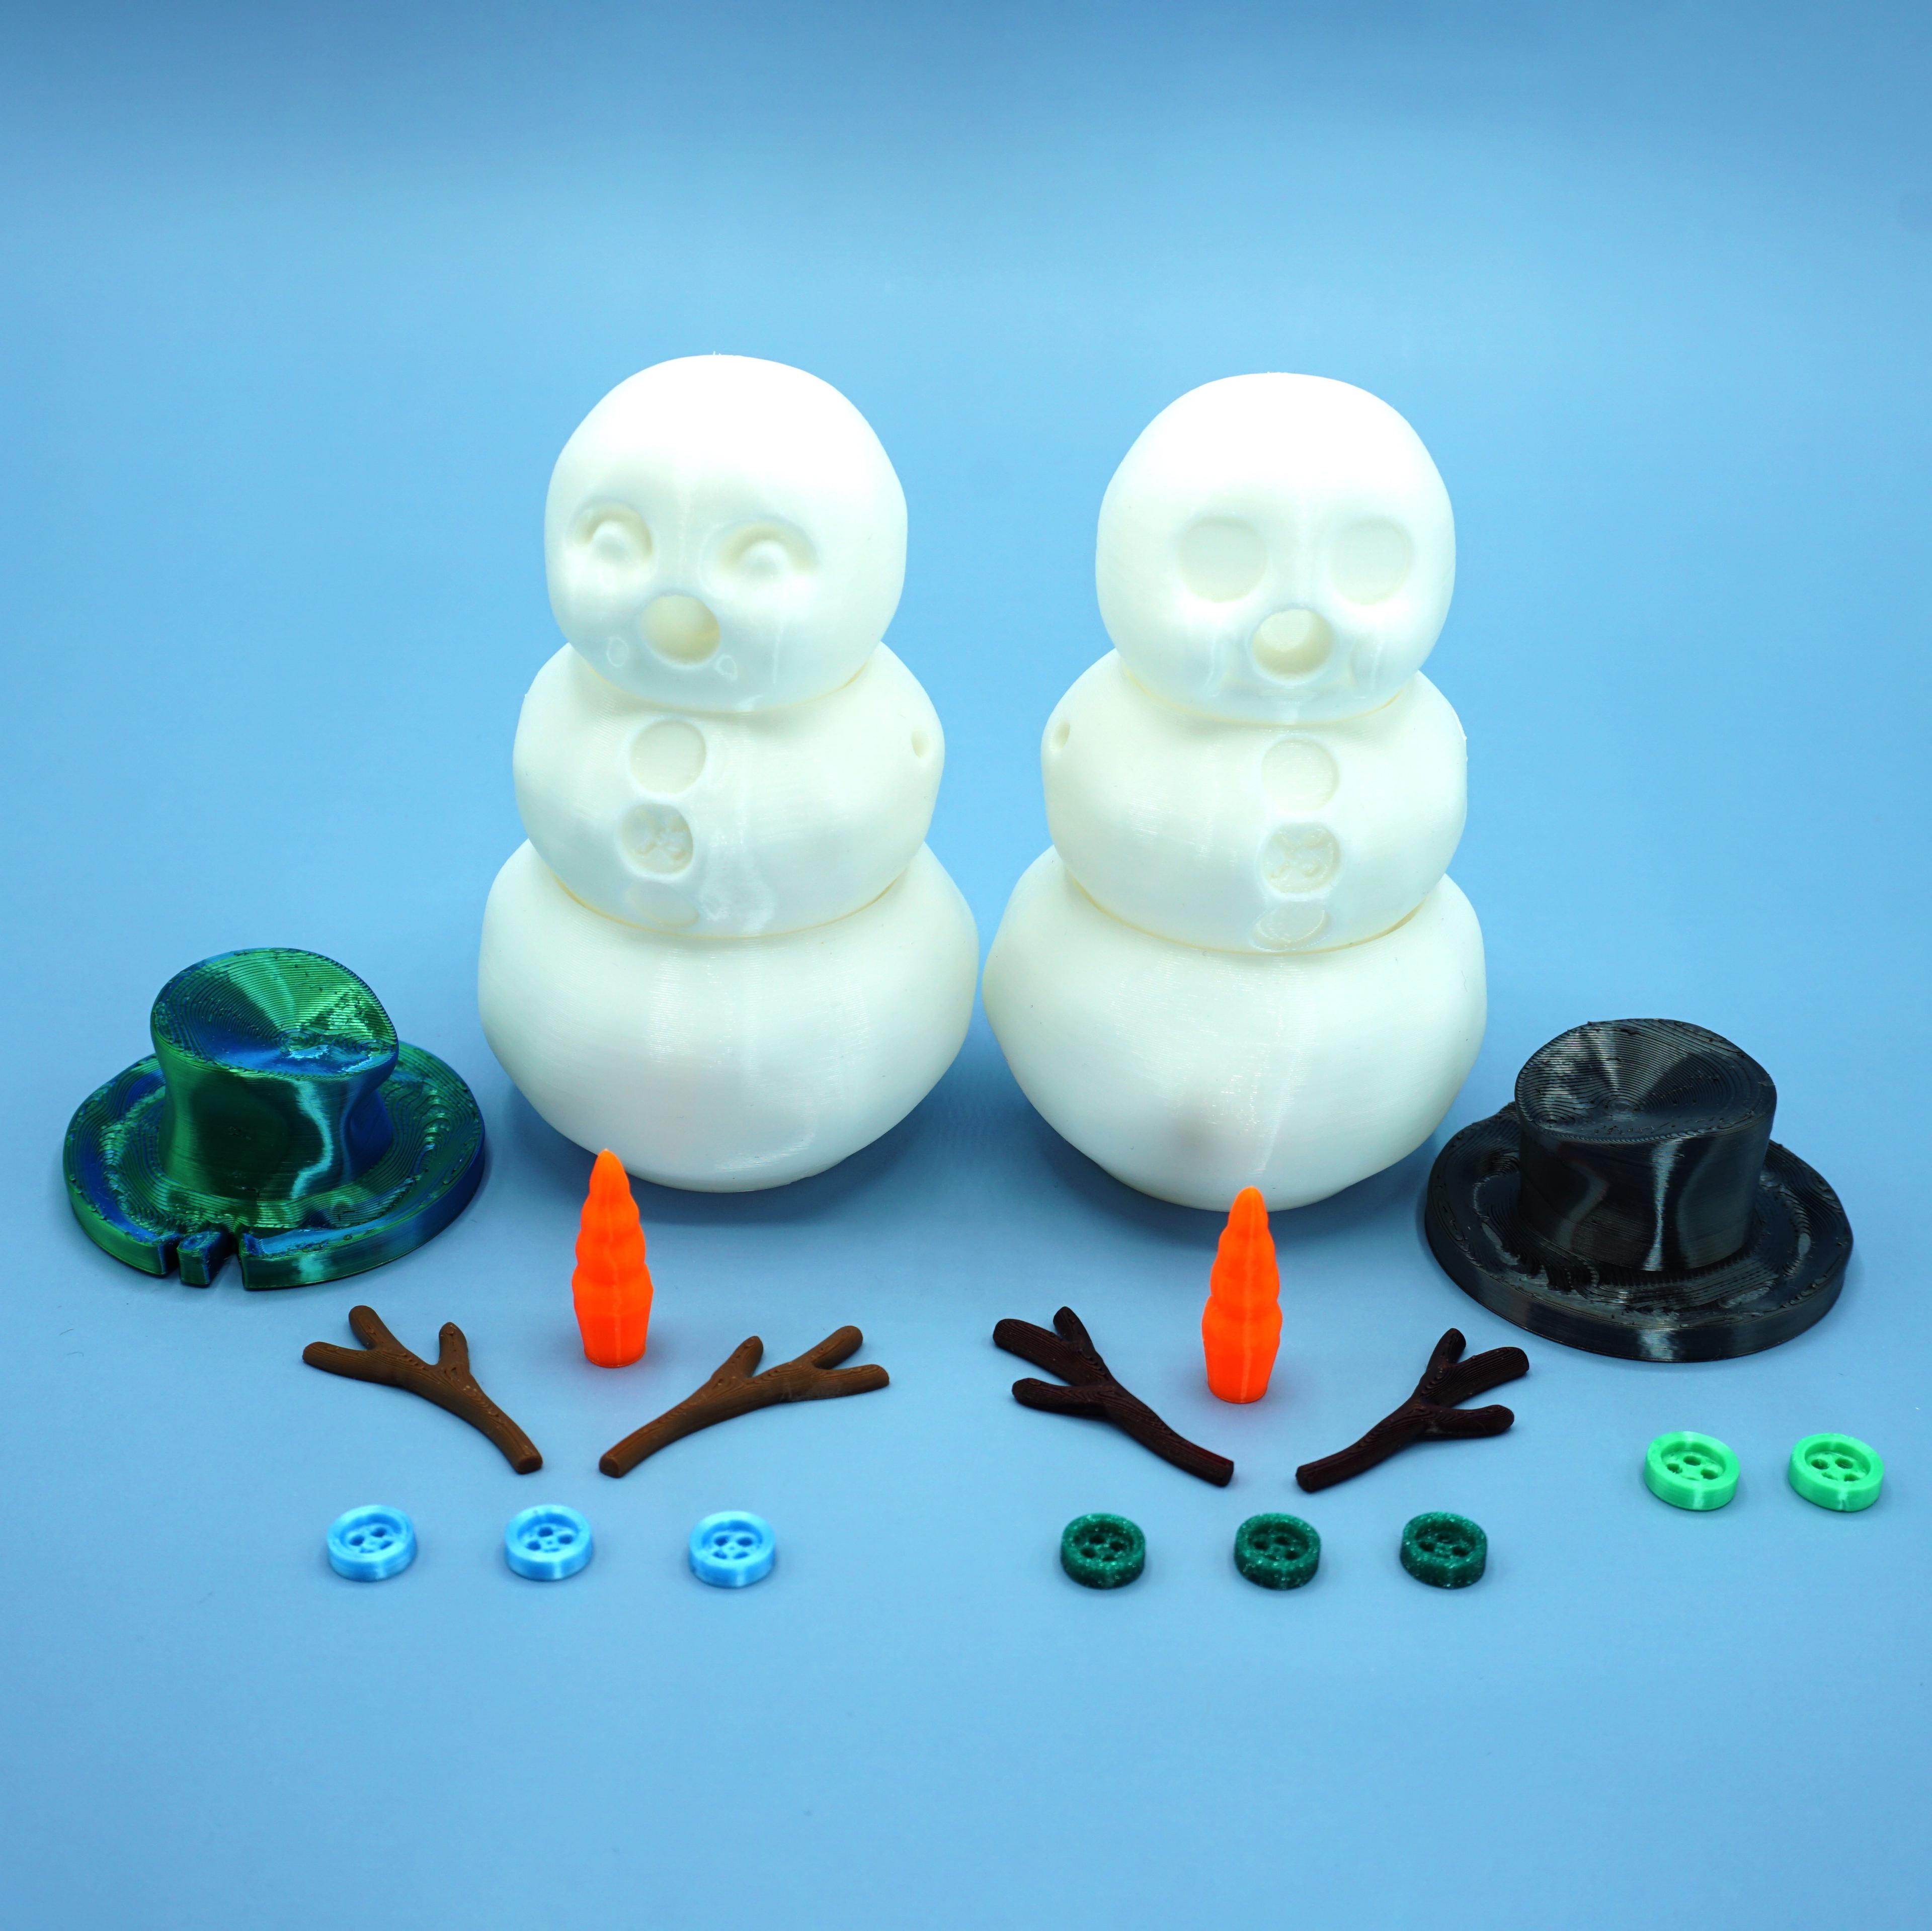 Articulated Snowman 3d model